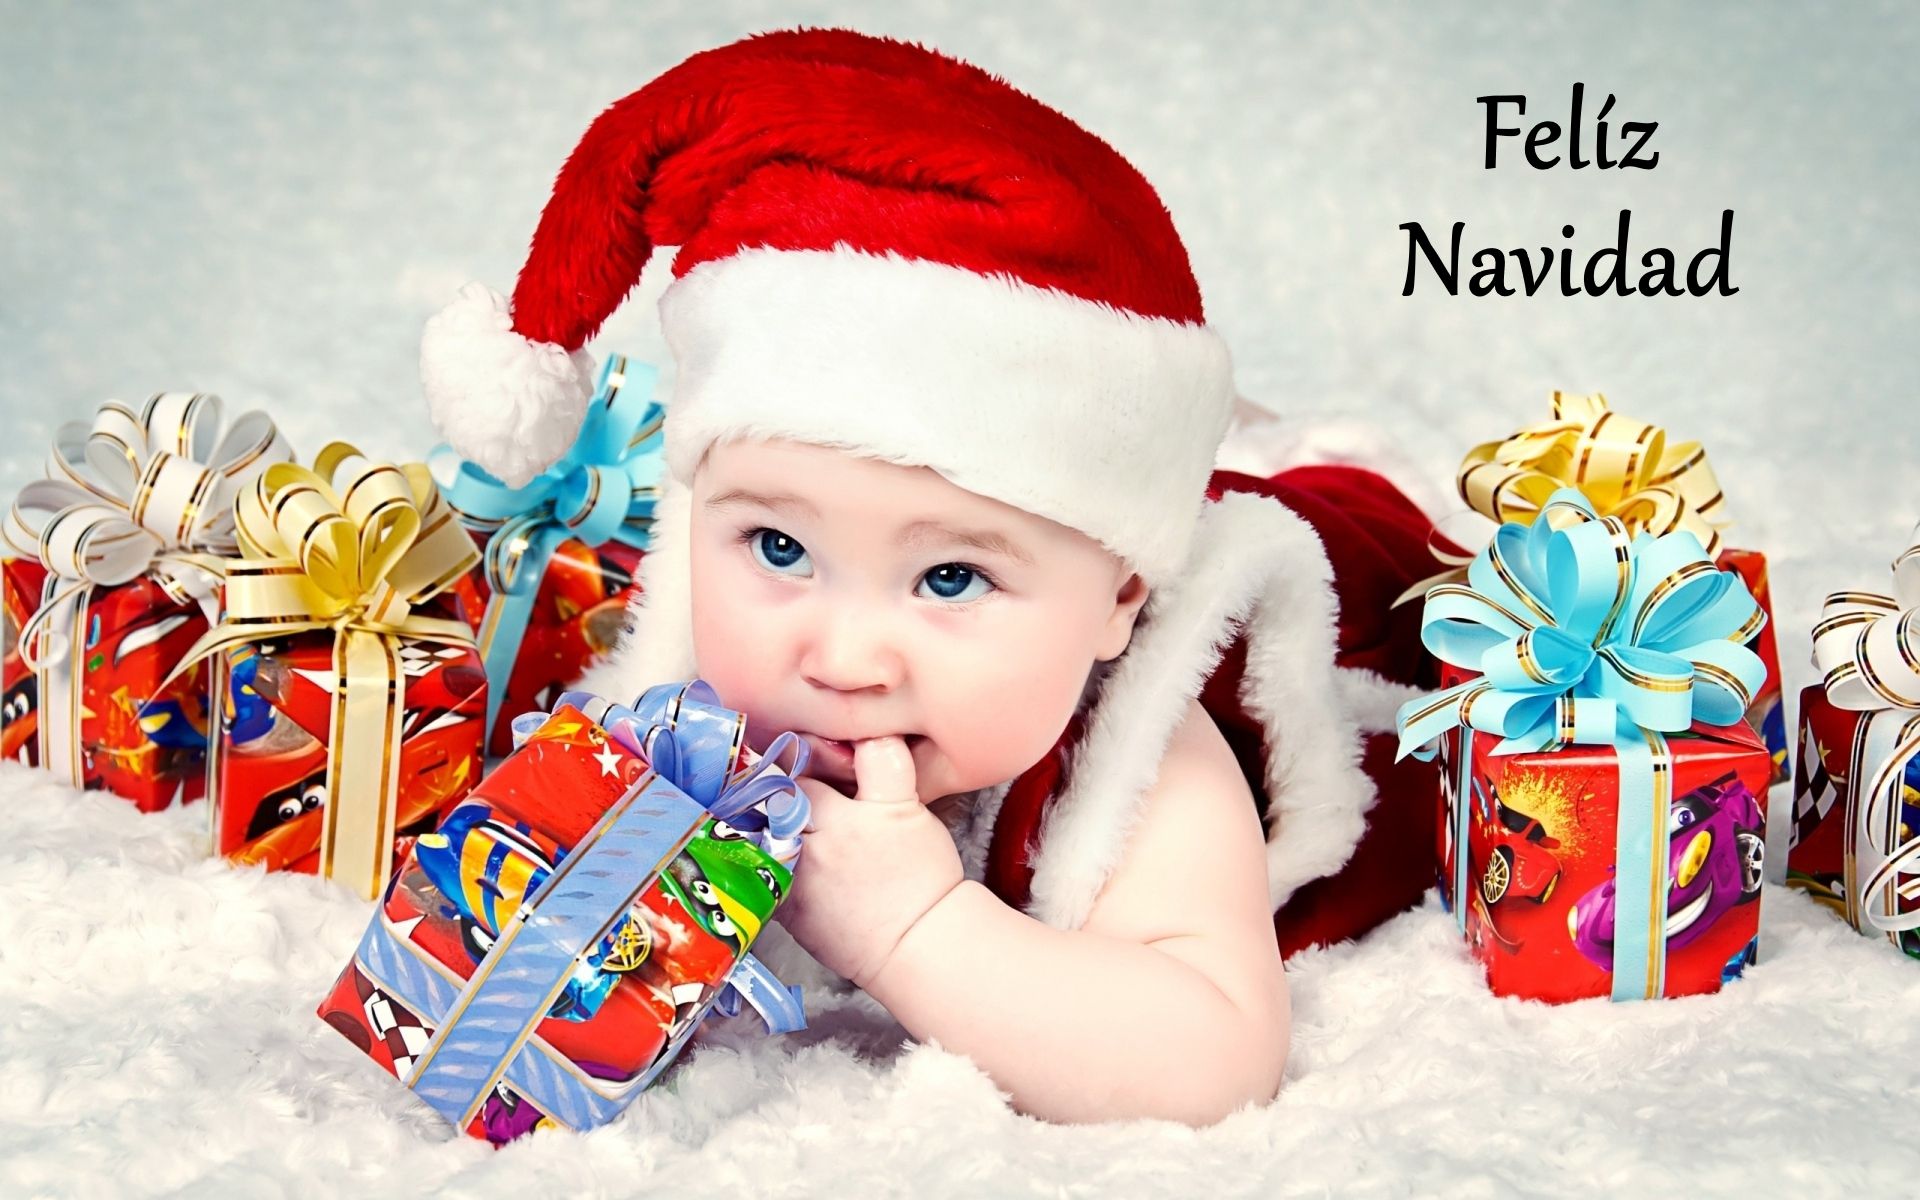 Скачать обои бесплатно Рождество, Шляпа, Подарки, Голубые Глаза, Младенец, Праздничные картинка на рабочий стол ПК